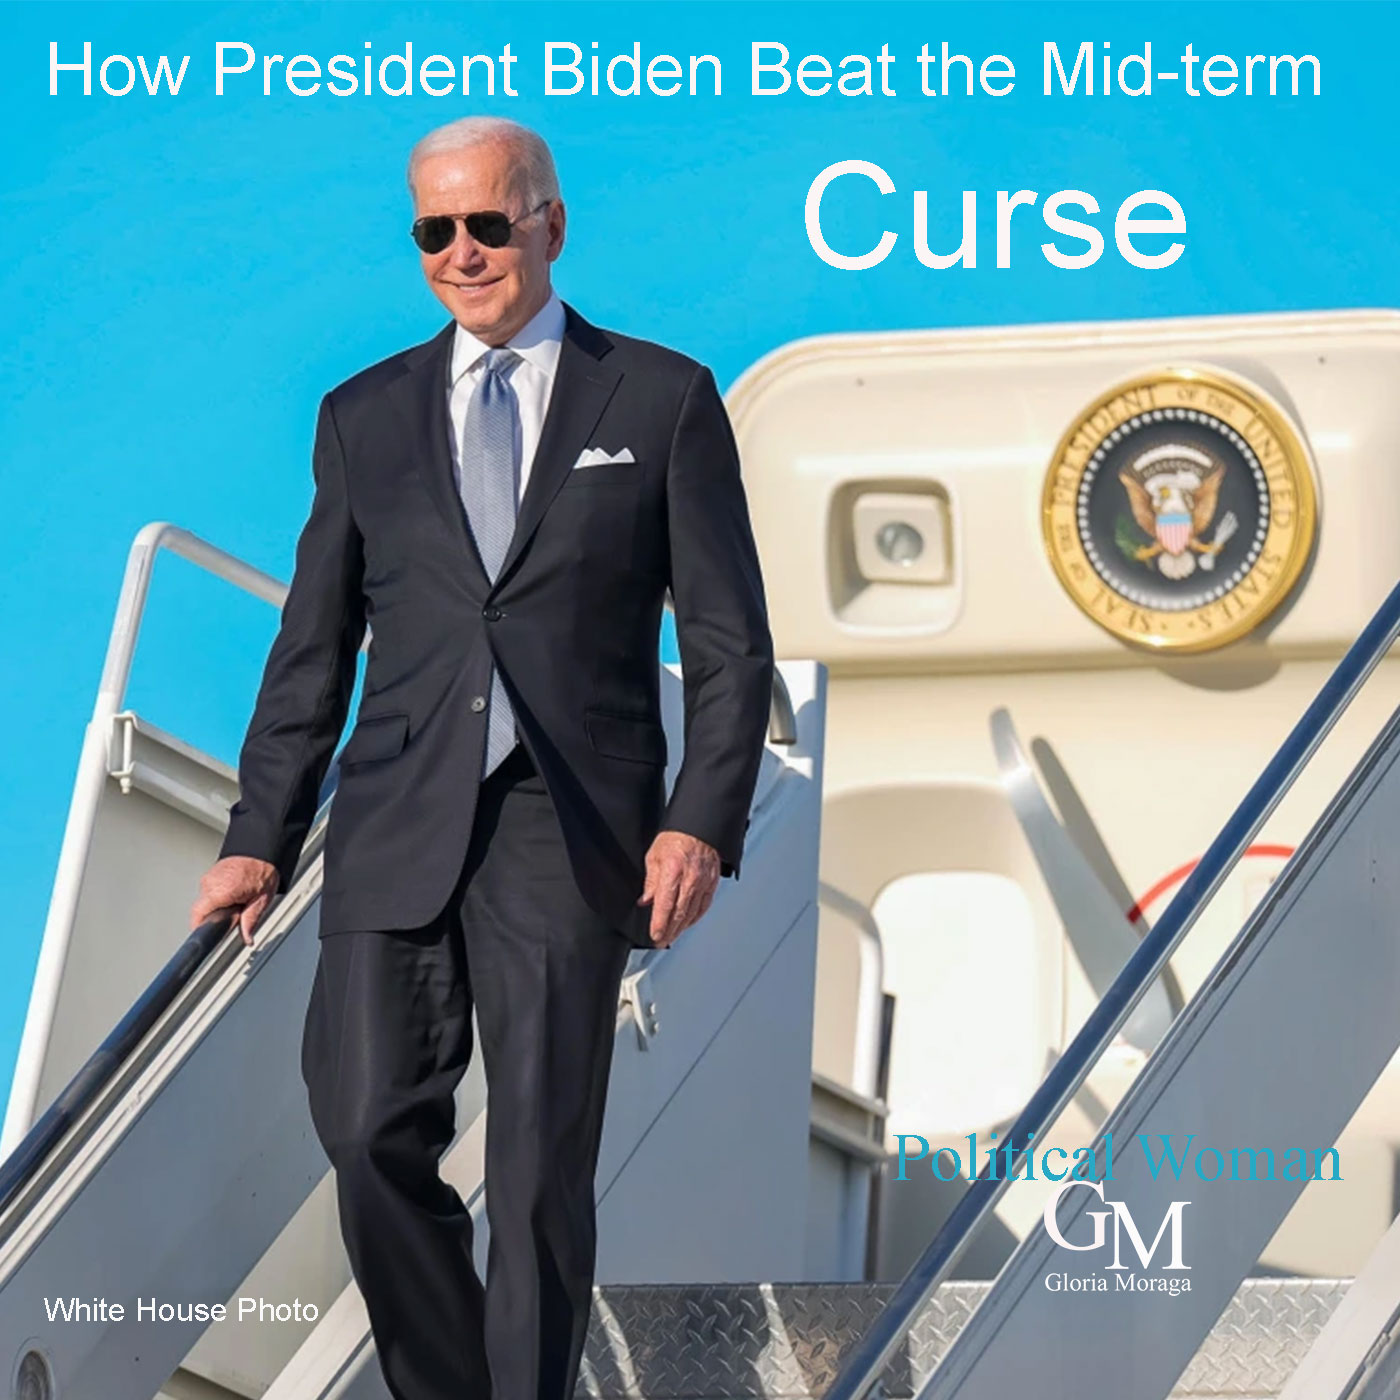 How President Biden Avoided the mid-term election Curse